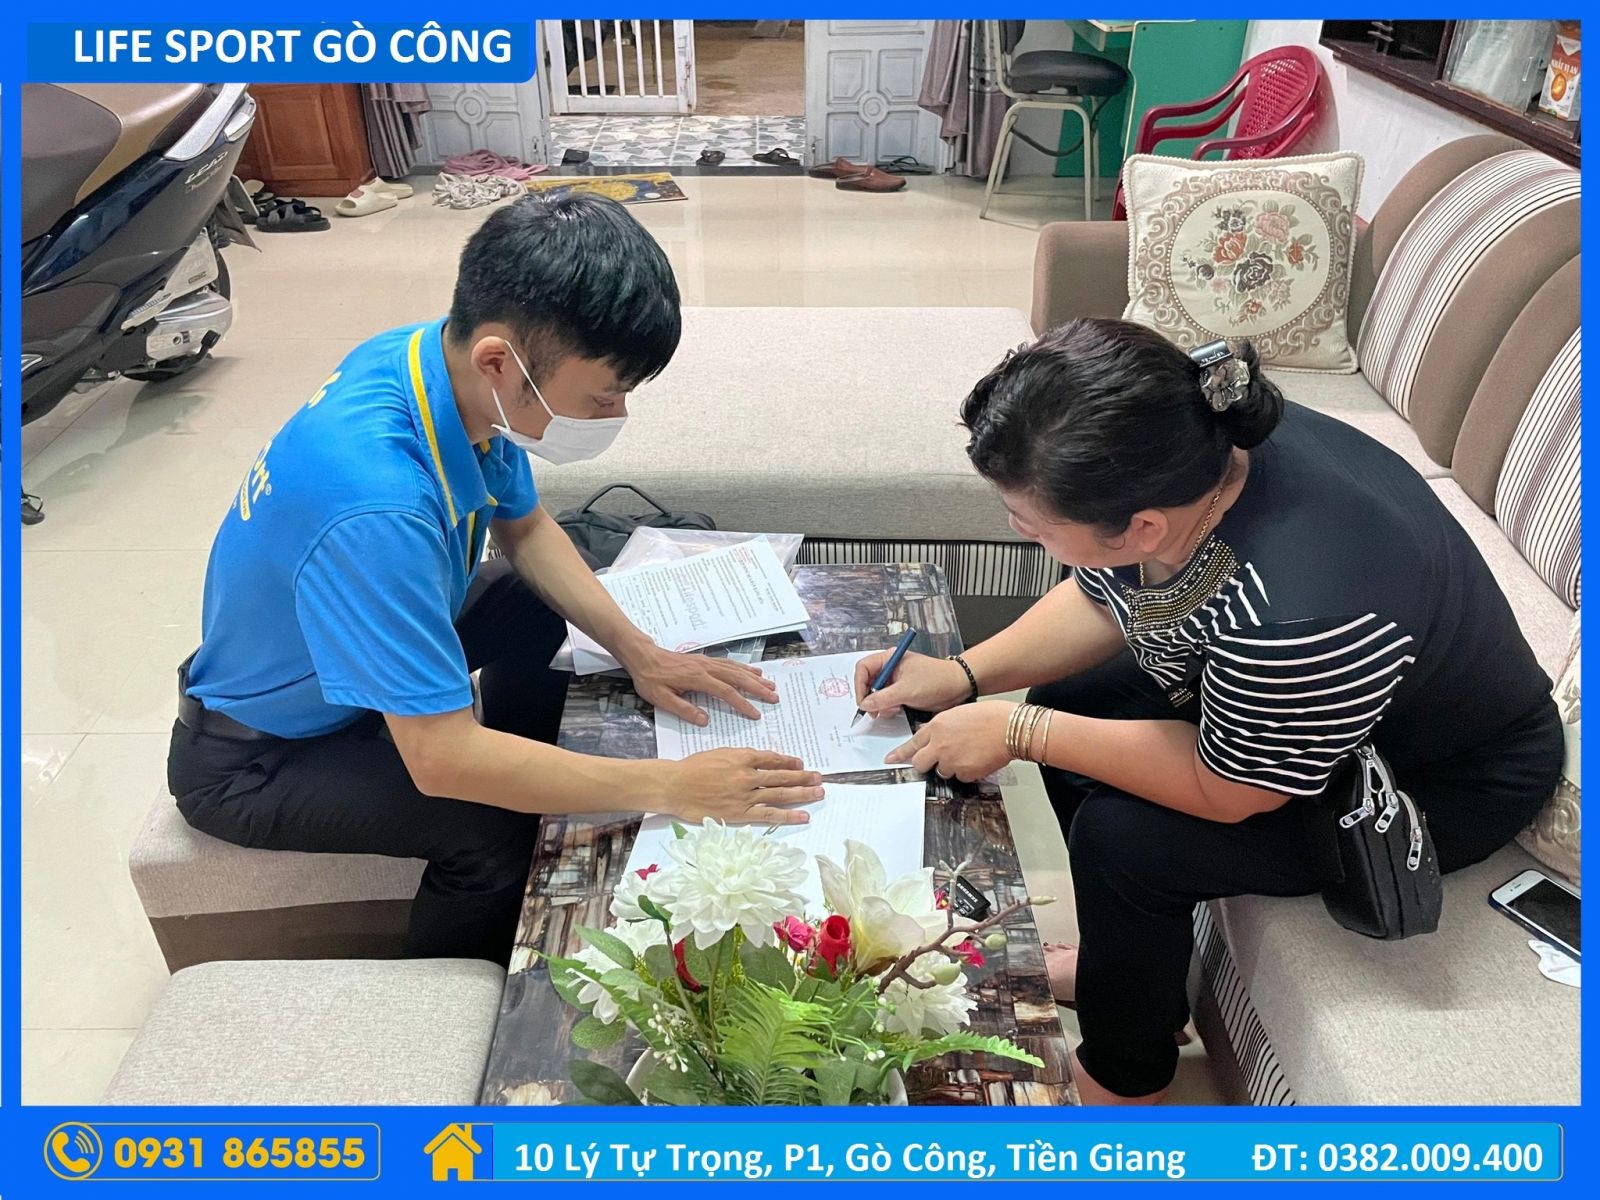 LifeSport Tiền Giang - Gò Công